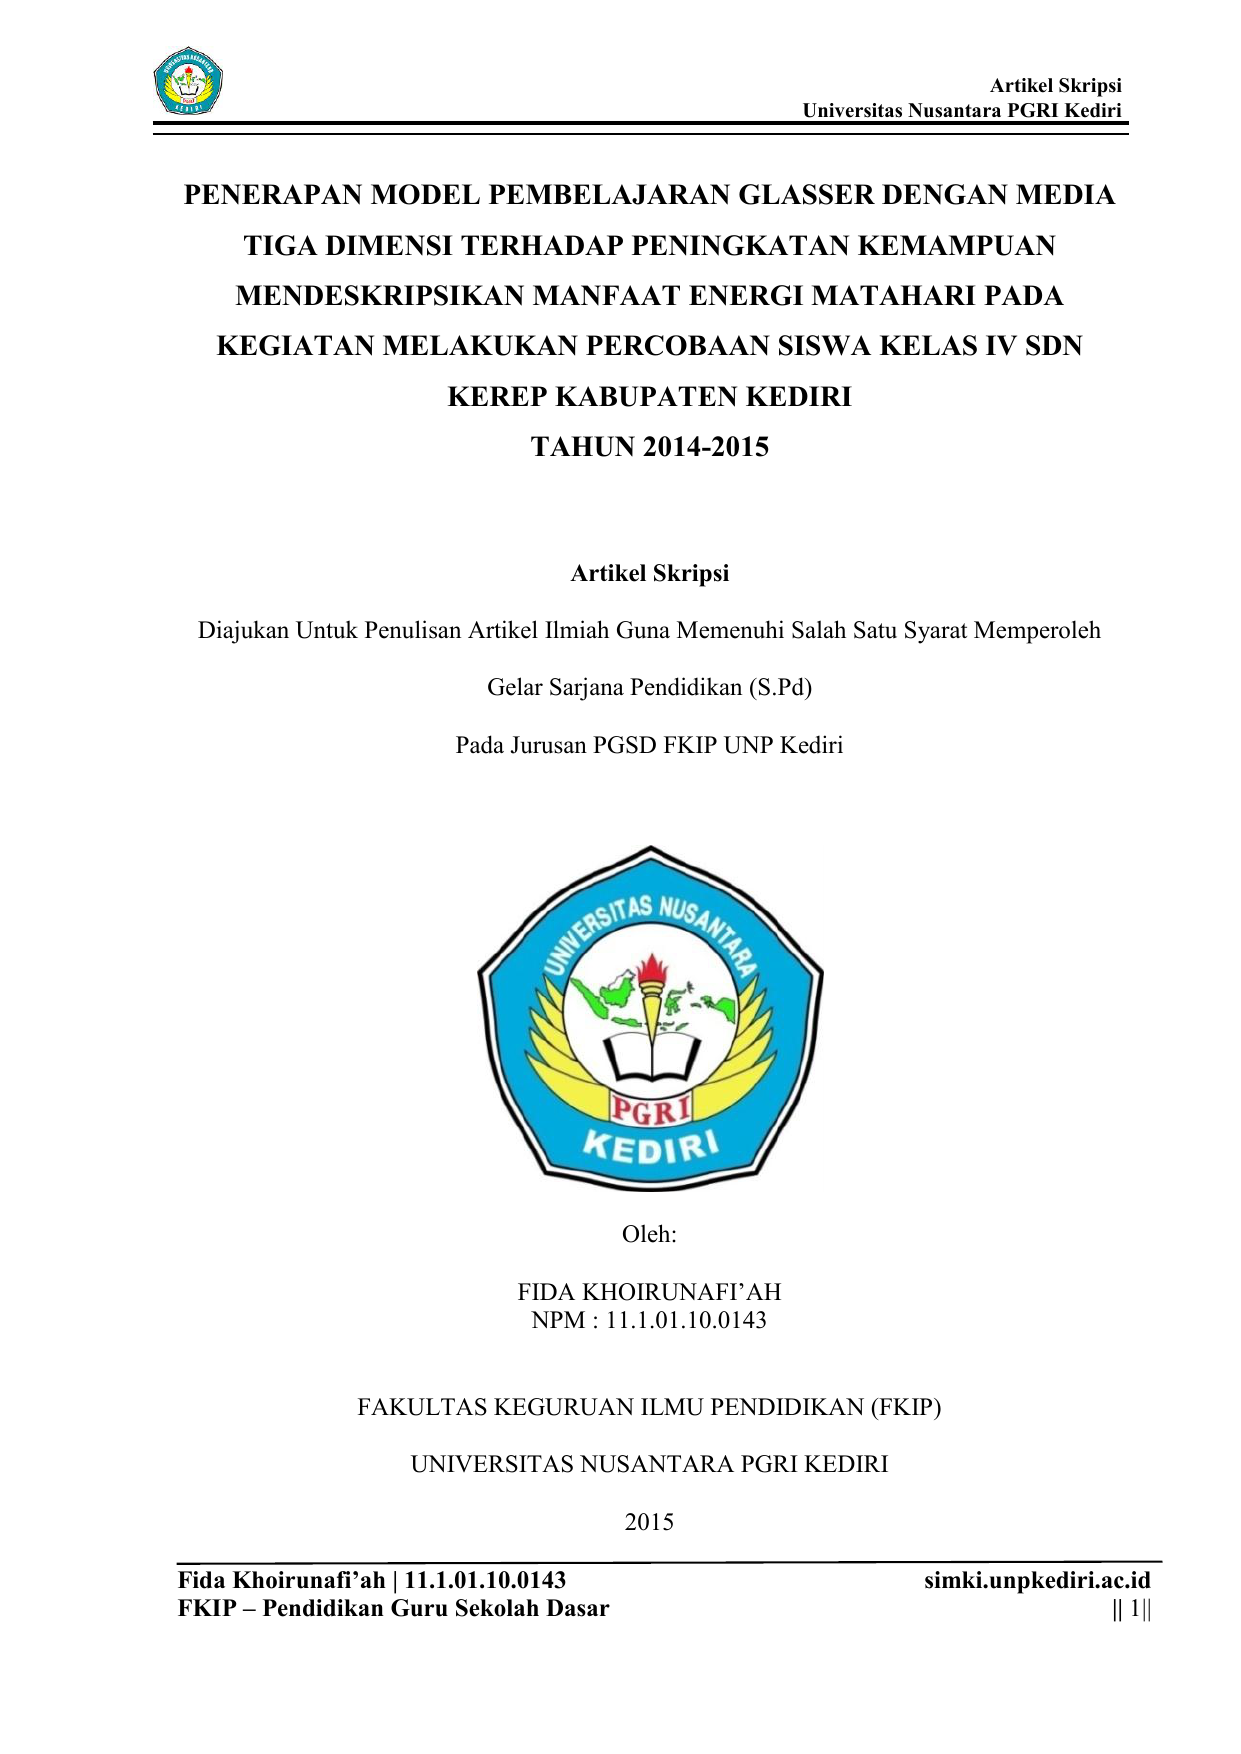 Artikel Skripsi Universitas Nusantara PGRI Kediri PENERAPAN MODEL PEMBELAJARAN GLASSER DENGAN MEDIA TIGA DIMENSI TERHADAP PENINGKATAN KEMAMPUAN